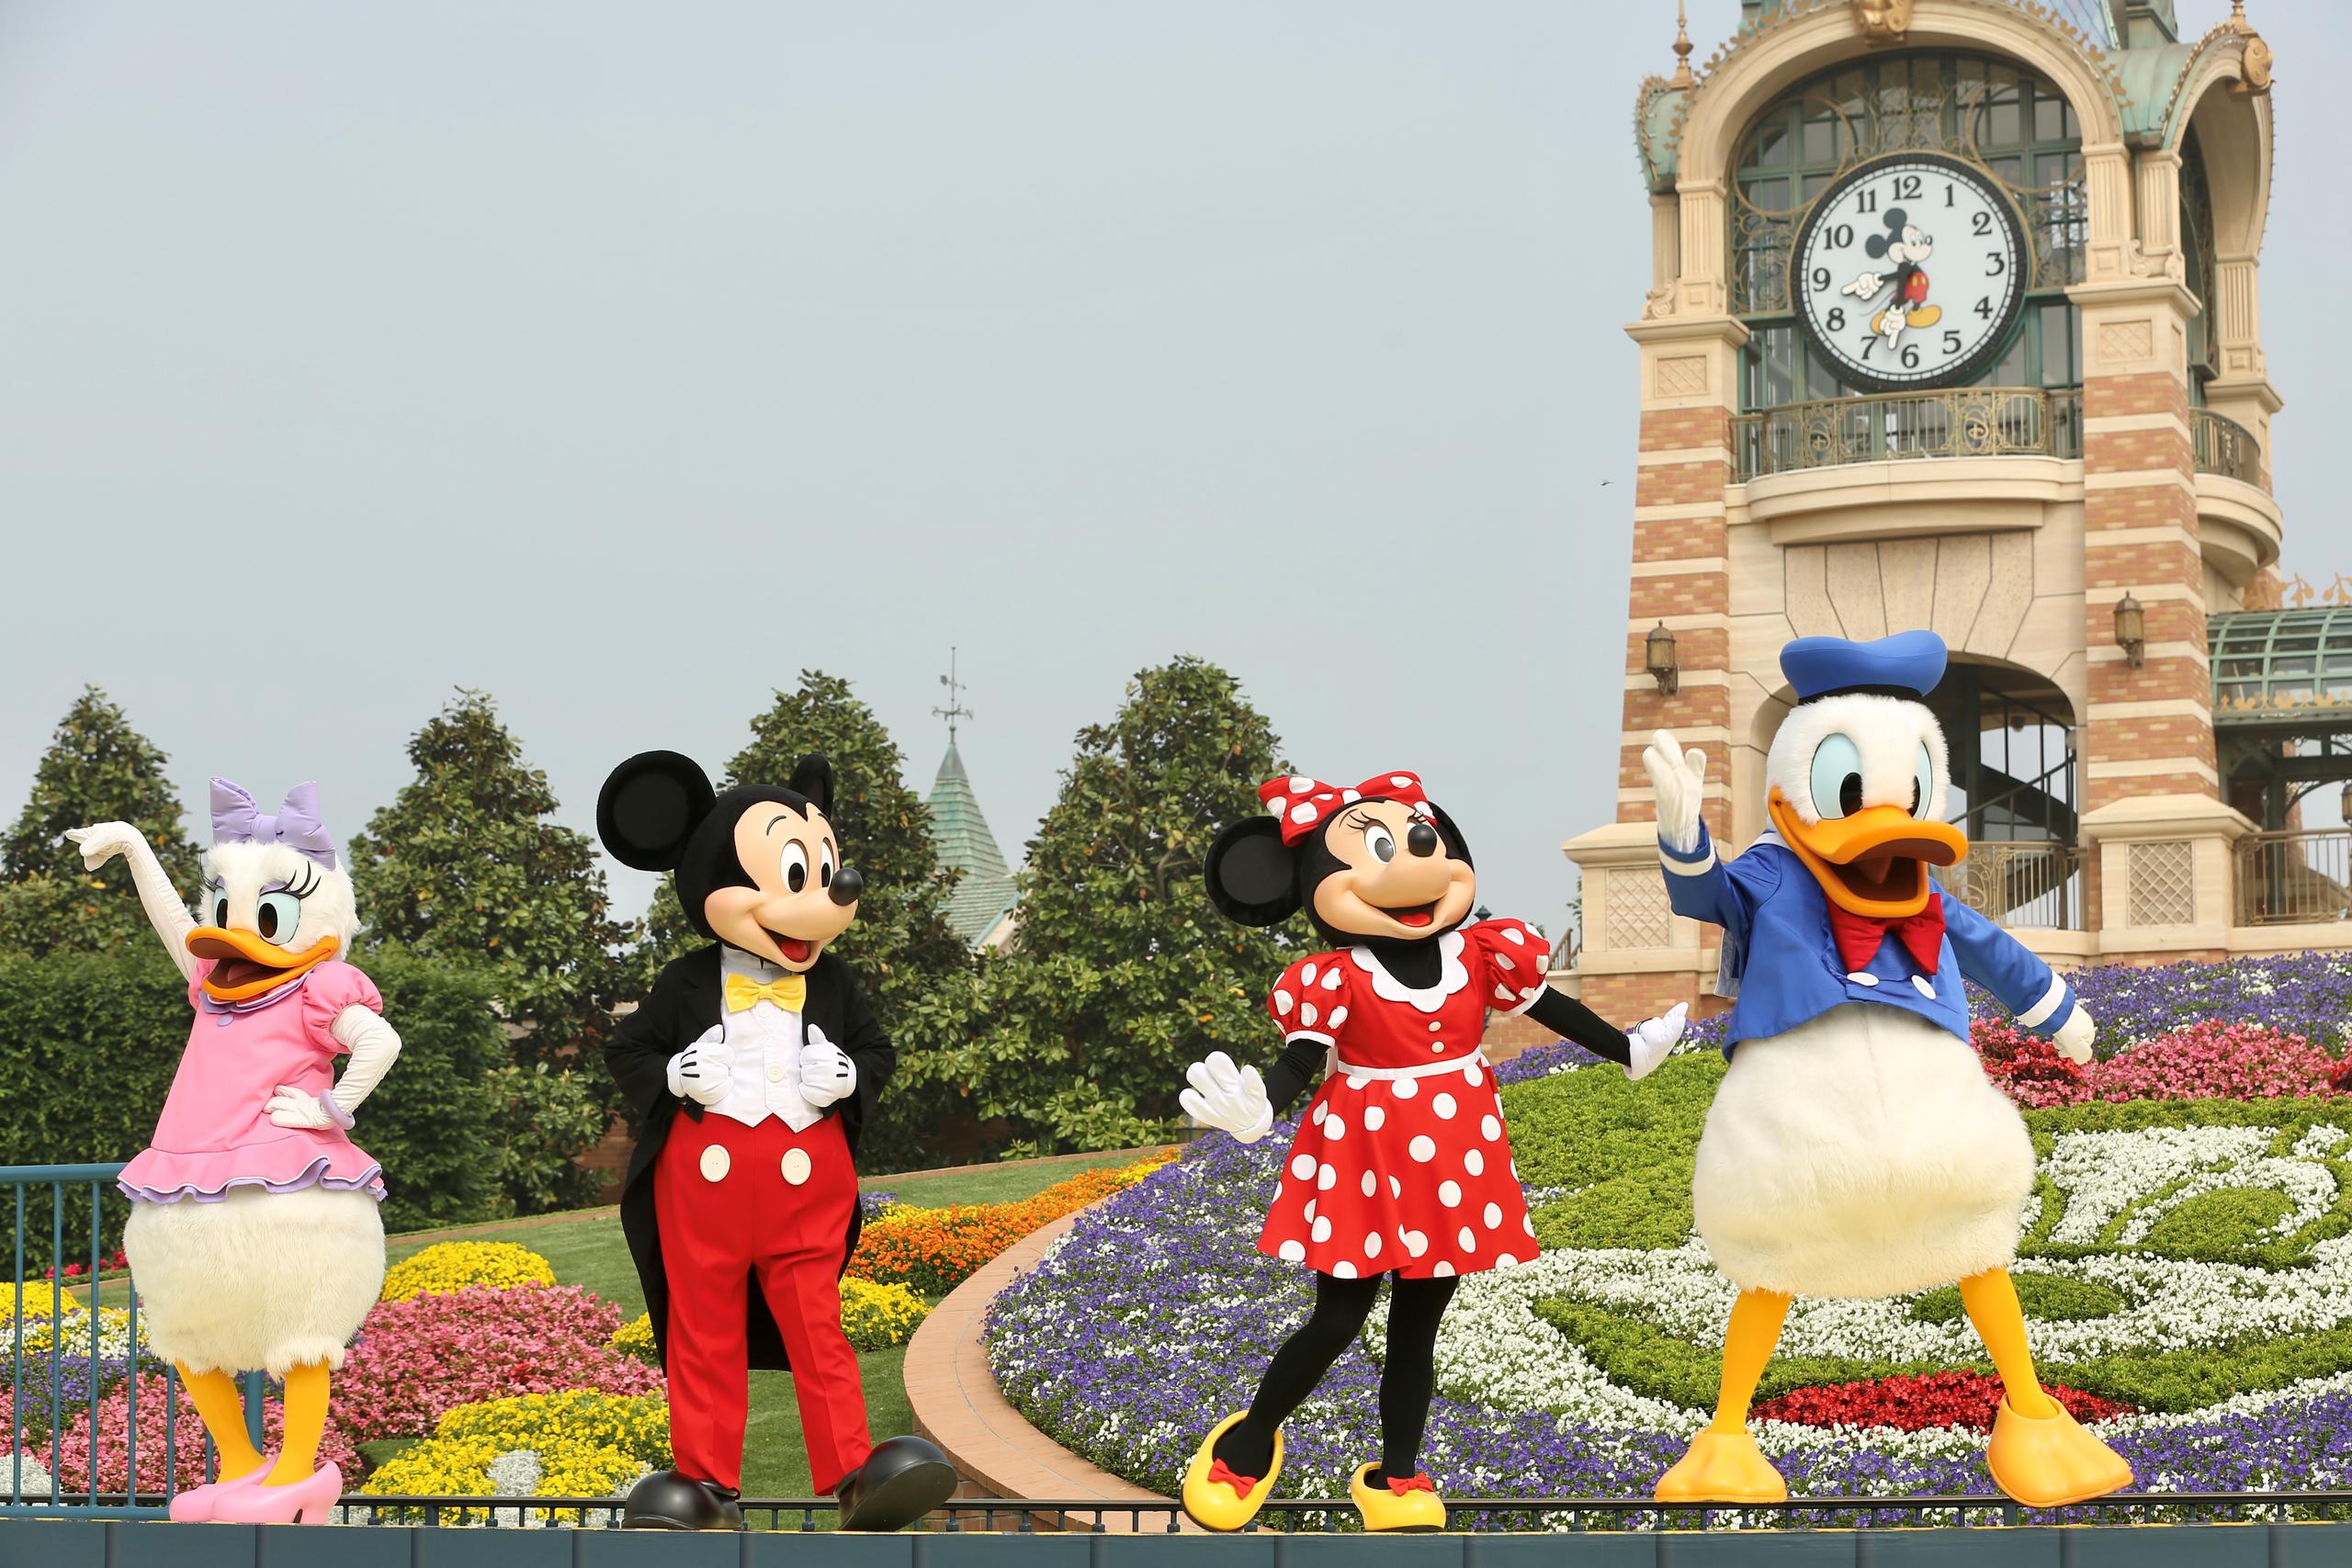 Se comprobó la temperatura corporal a los visitantes, muchos ataviados con orejas de Mickey Mouse y niños disfrazados como personajes de películas.